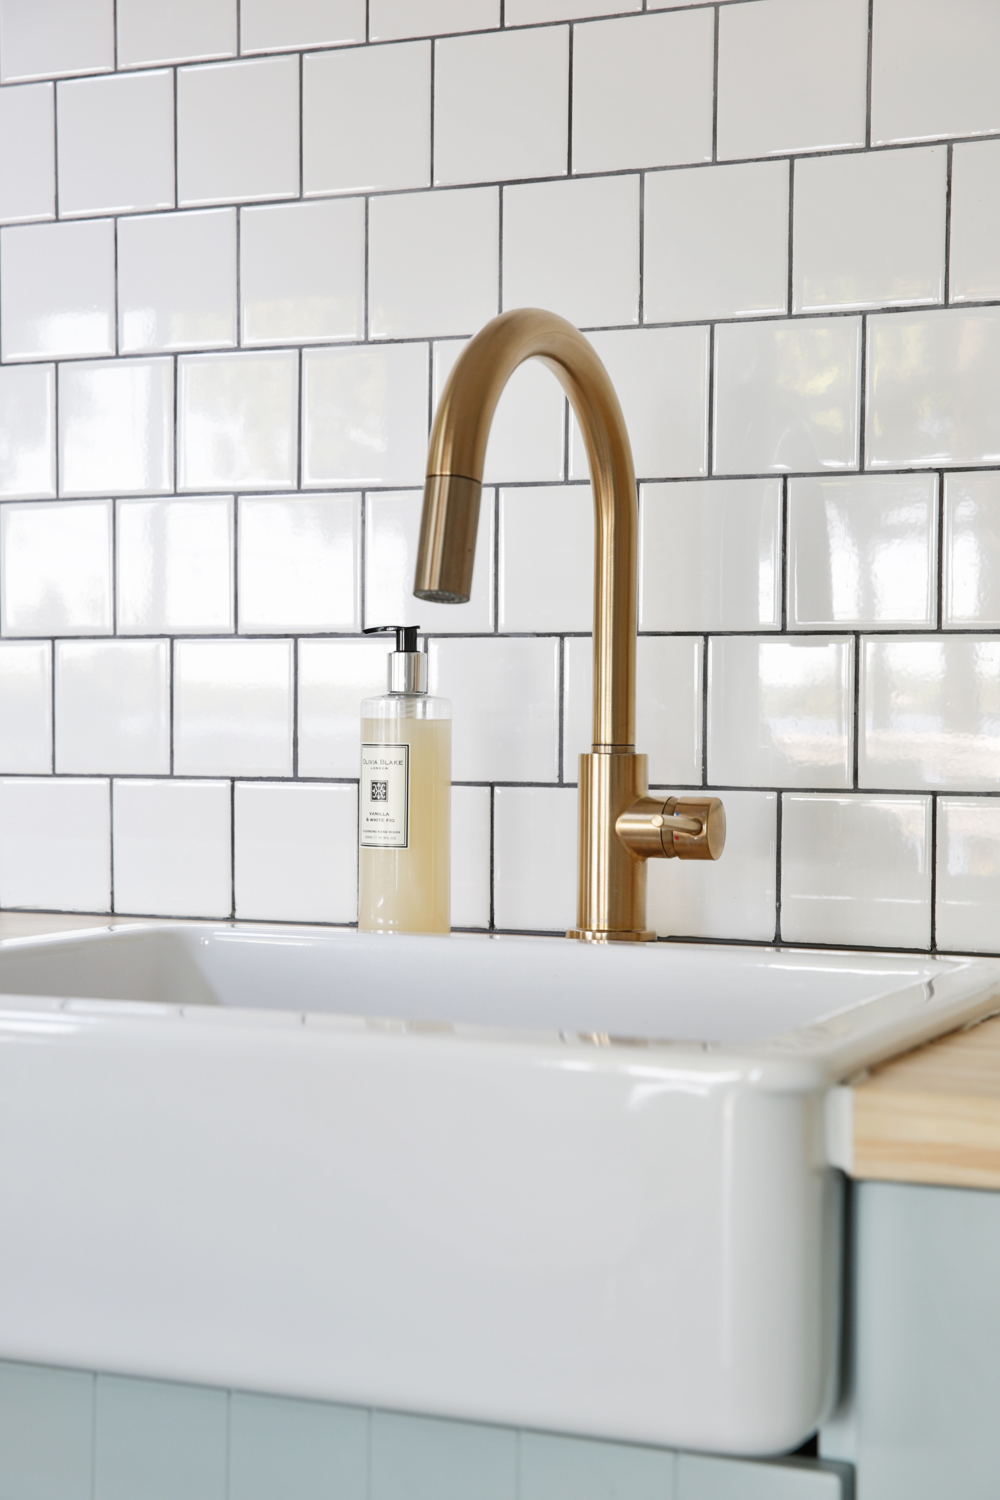 A brass kitchen sink faucet